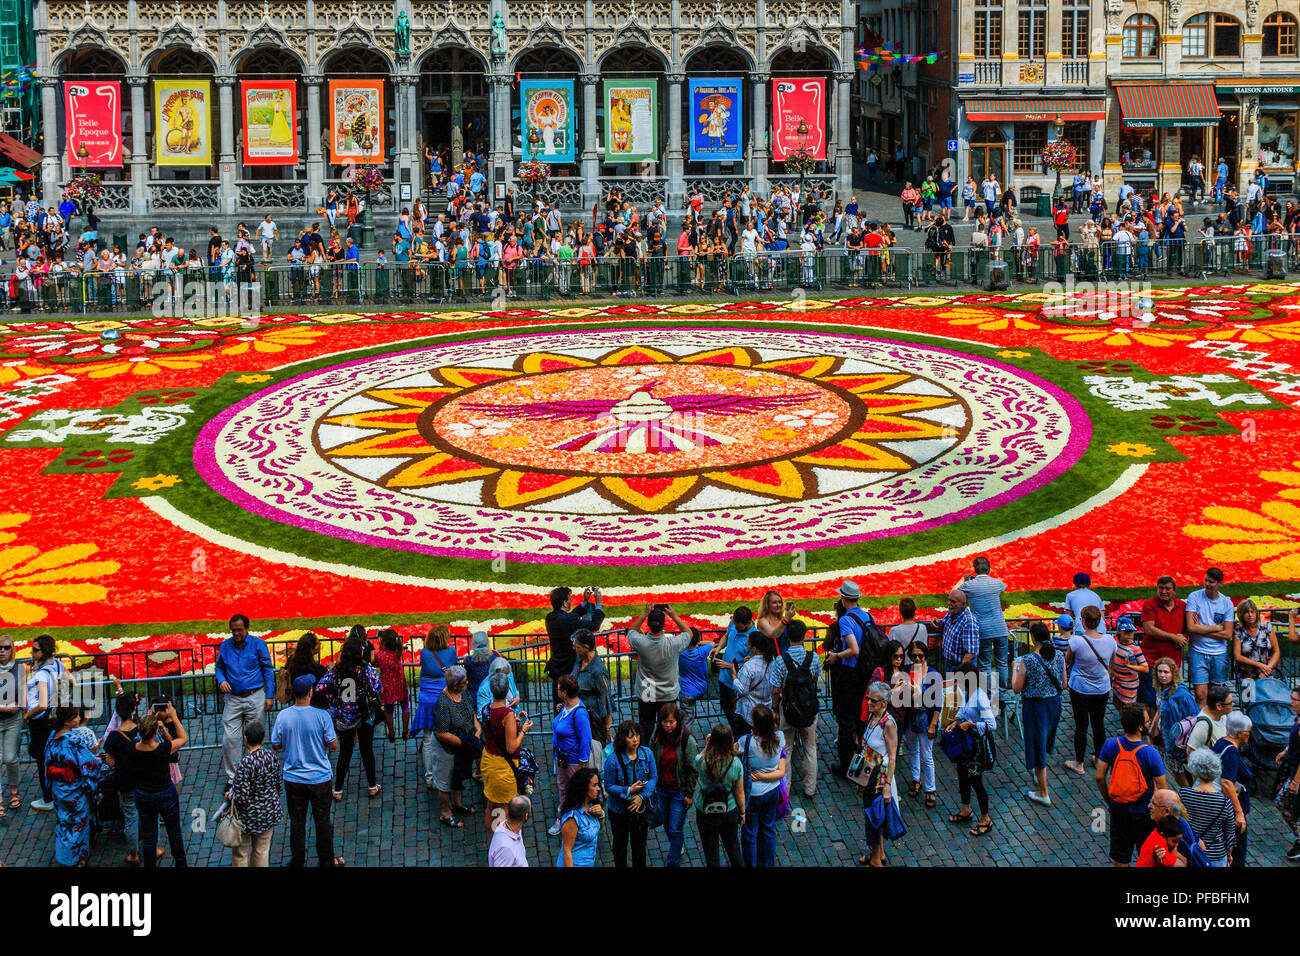 Bruxelles, Belgique - 16 août 2018 : Grand Place pendant la floraison Festival de tapis. Banque D'Images